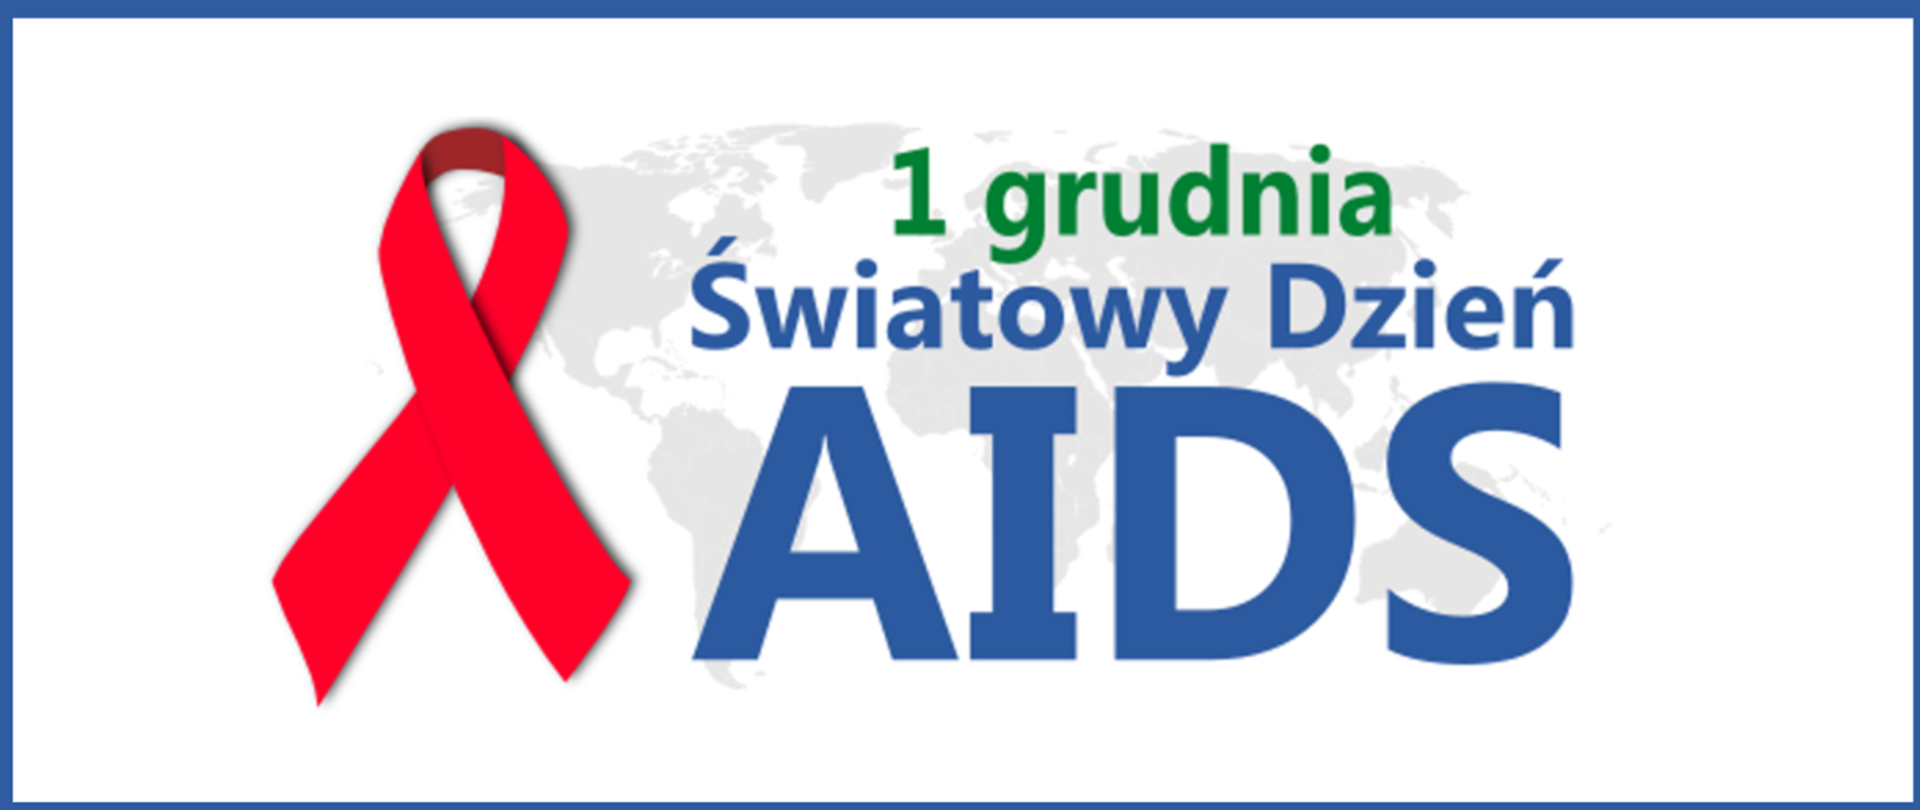 Światowy dzień AIDS